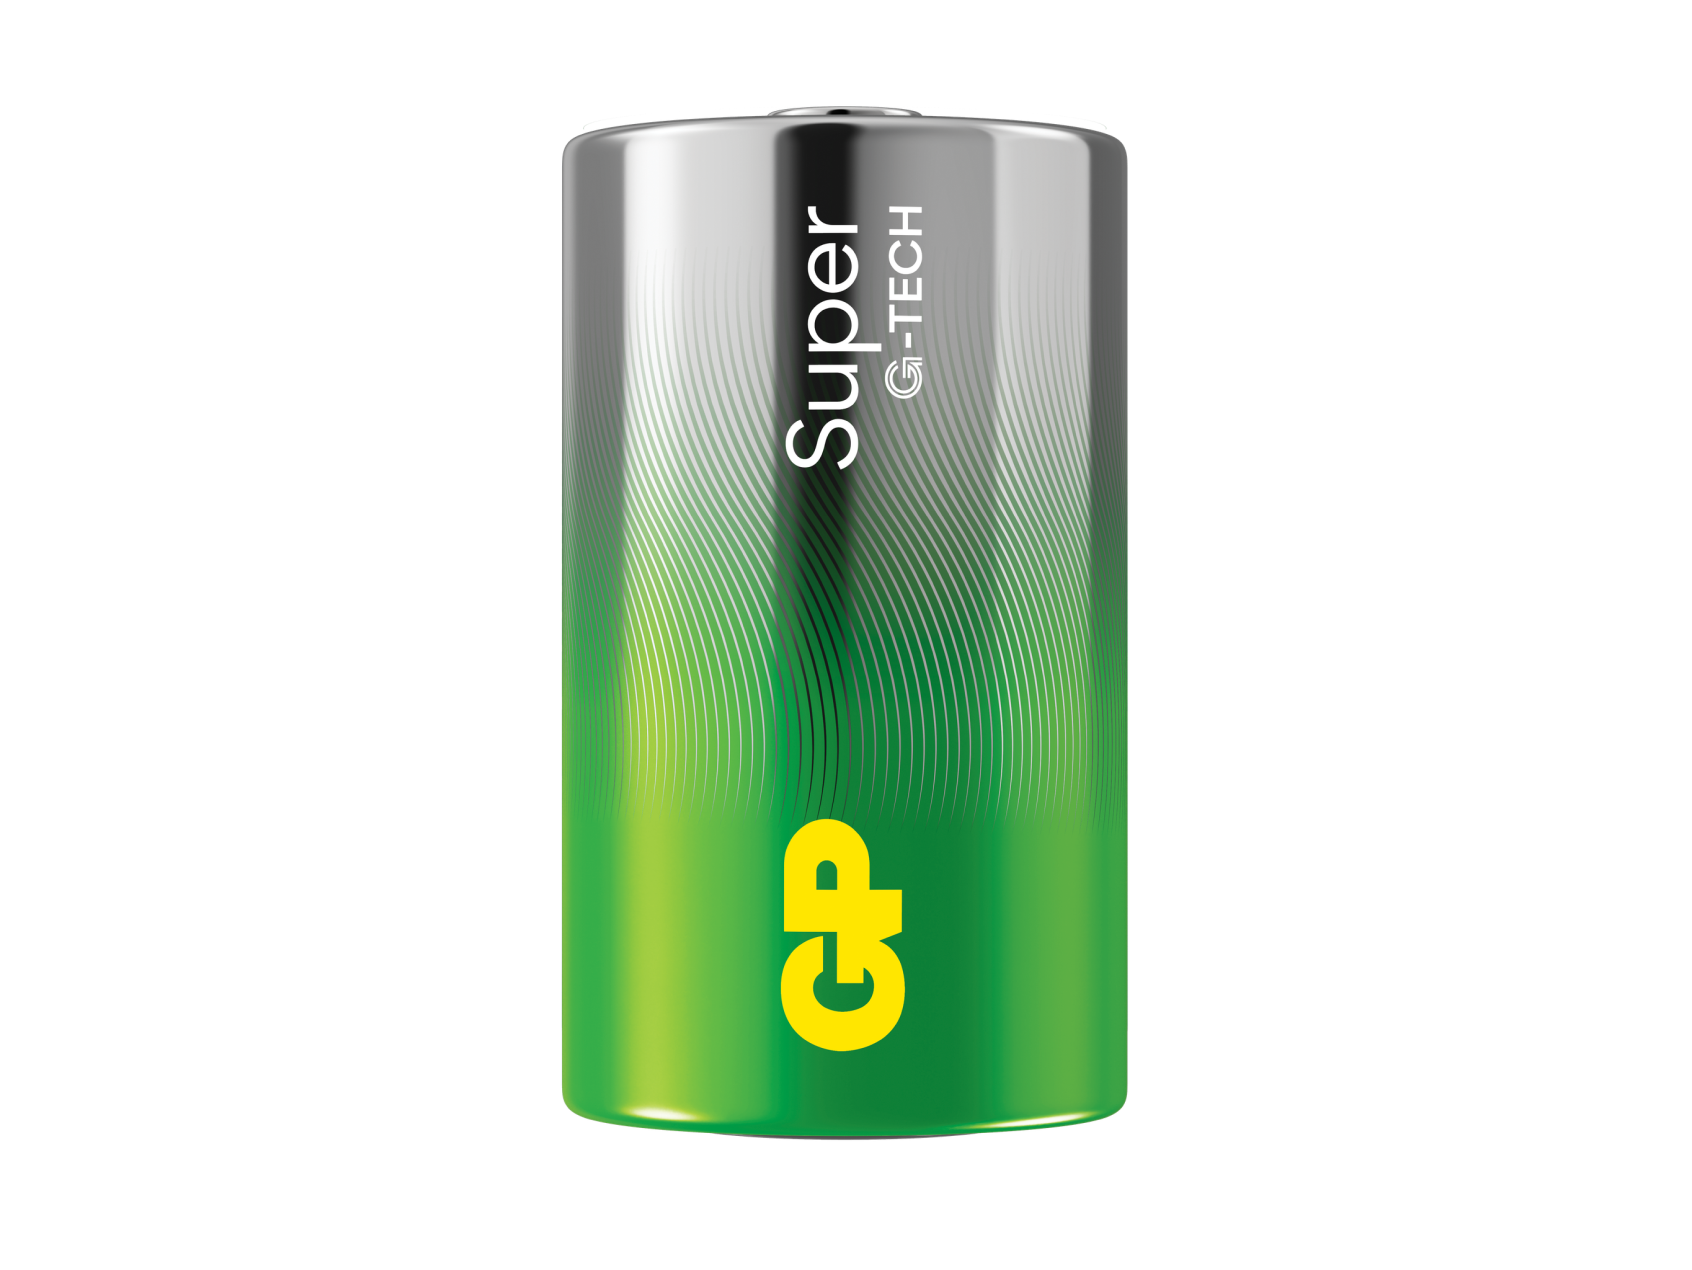 GP Batteries Super GP13A / LR20 Pile LR20 (D) alcaline(s) 1.5 V 2 pc(s)